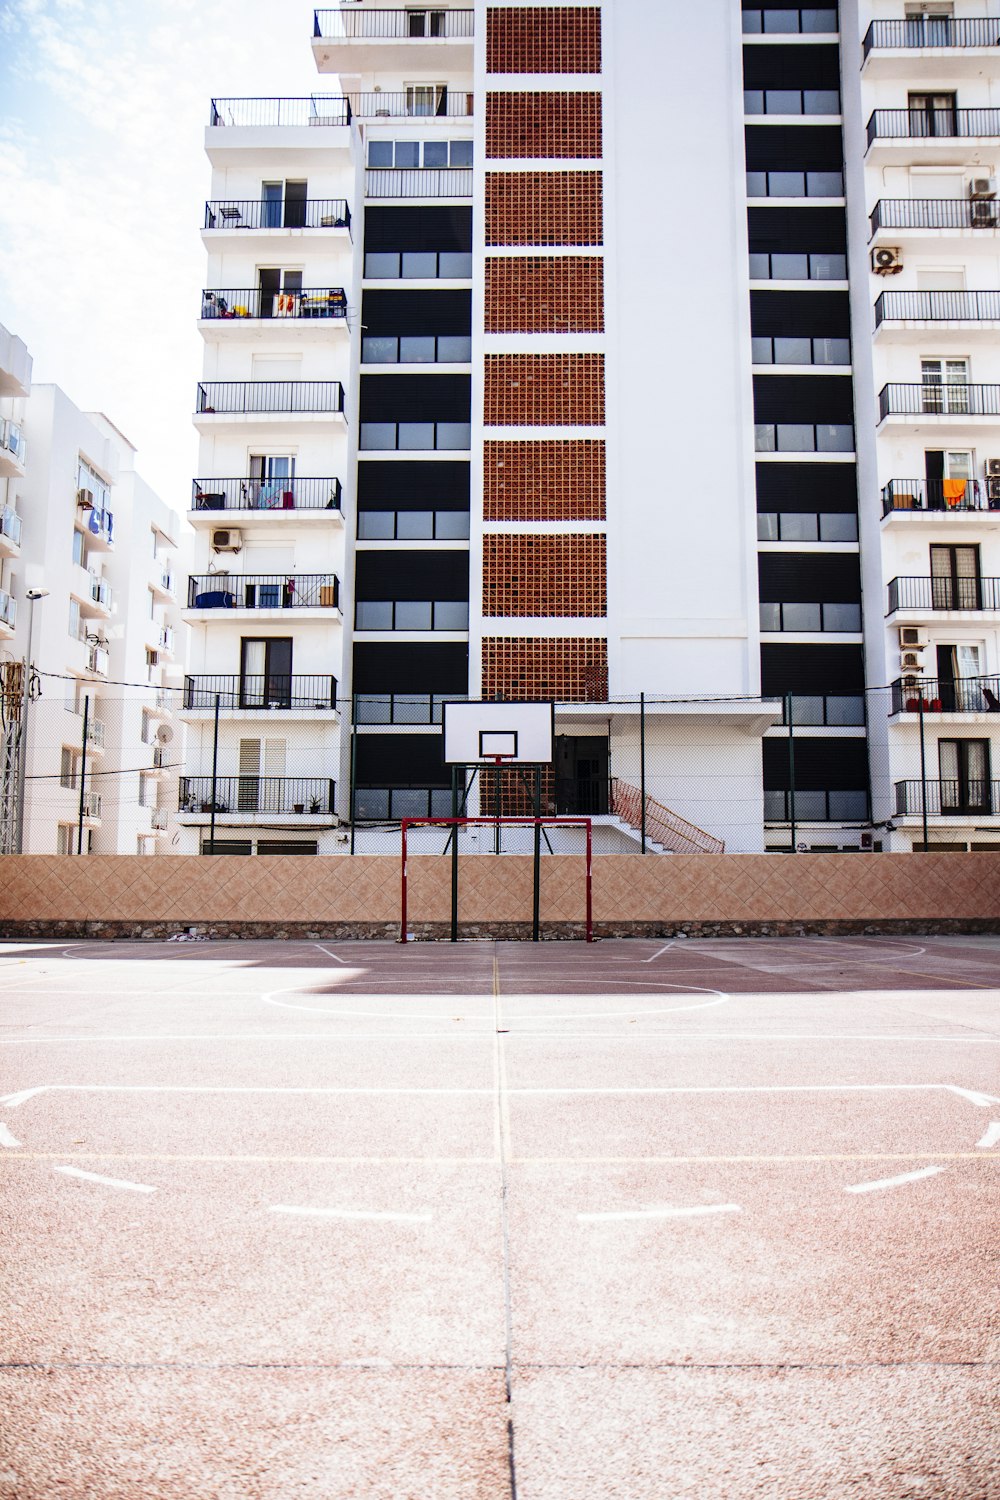 Aro de baloncesto blanco cerca de un edificio de hormigón blanco y marrón